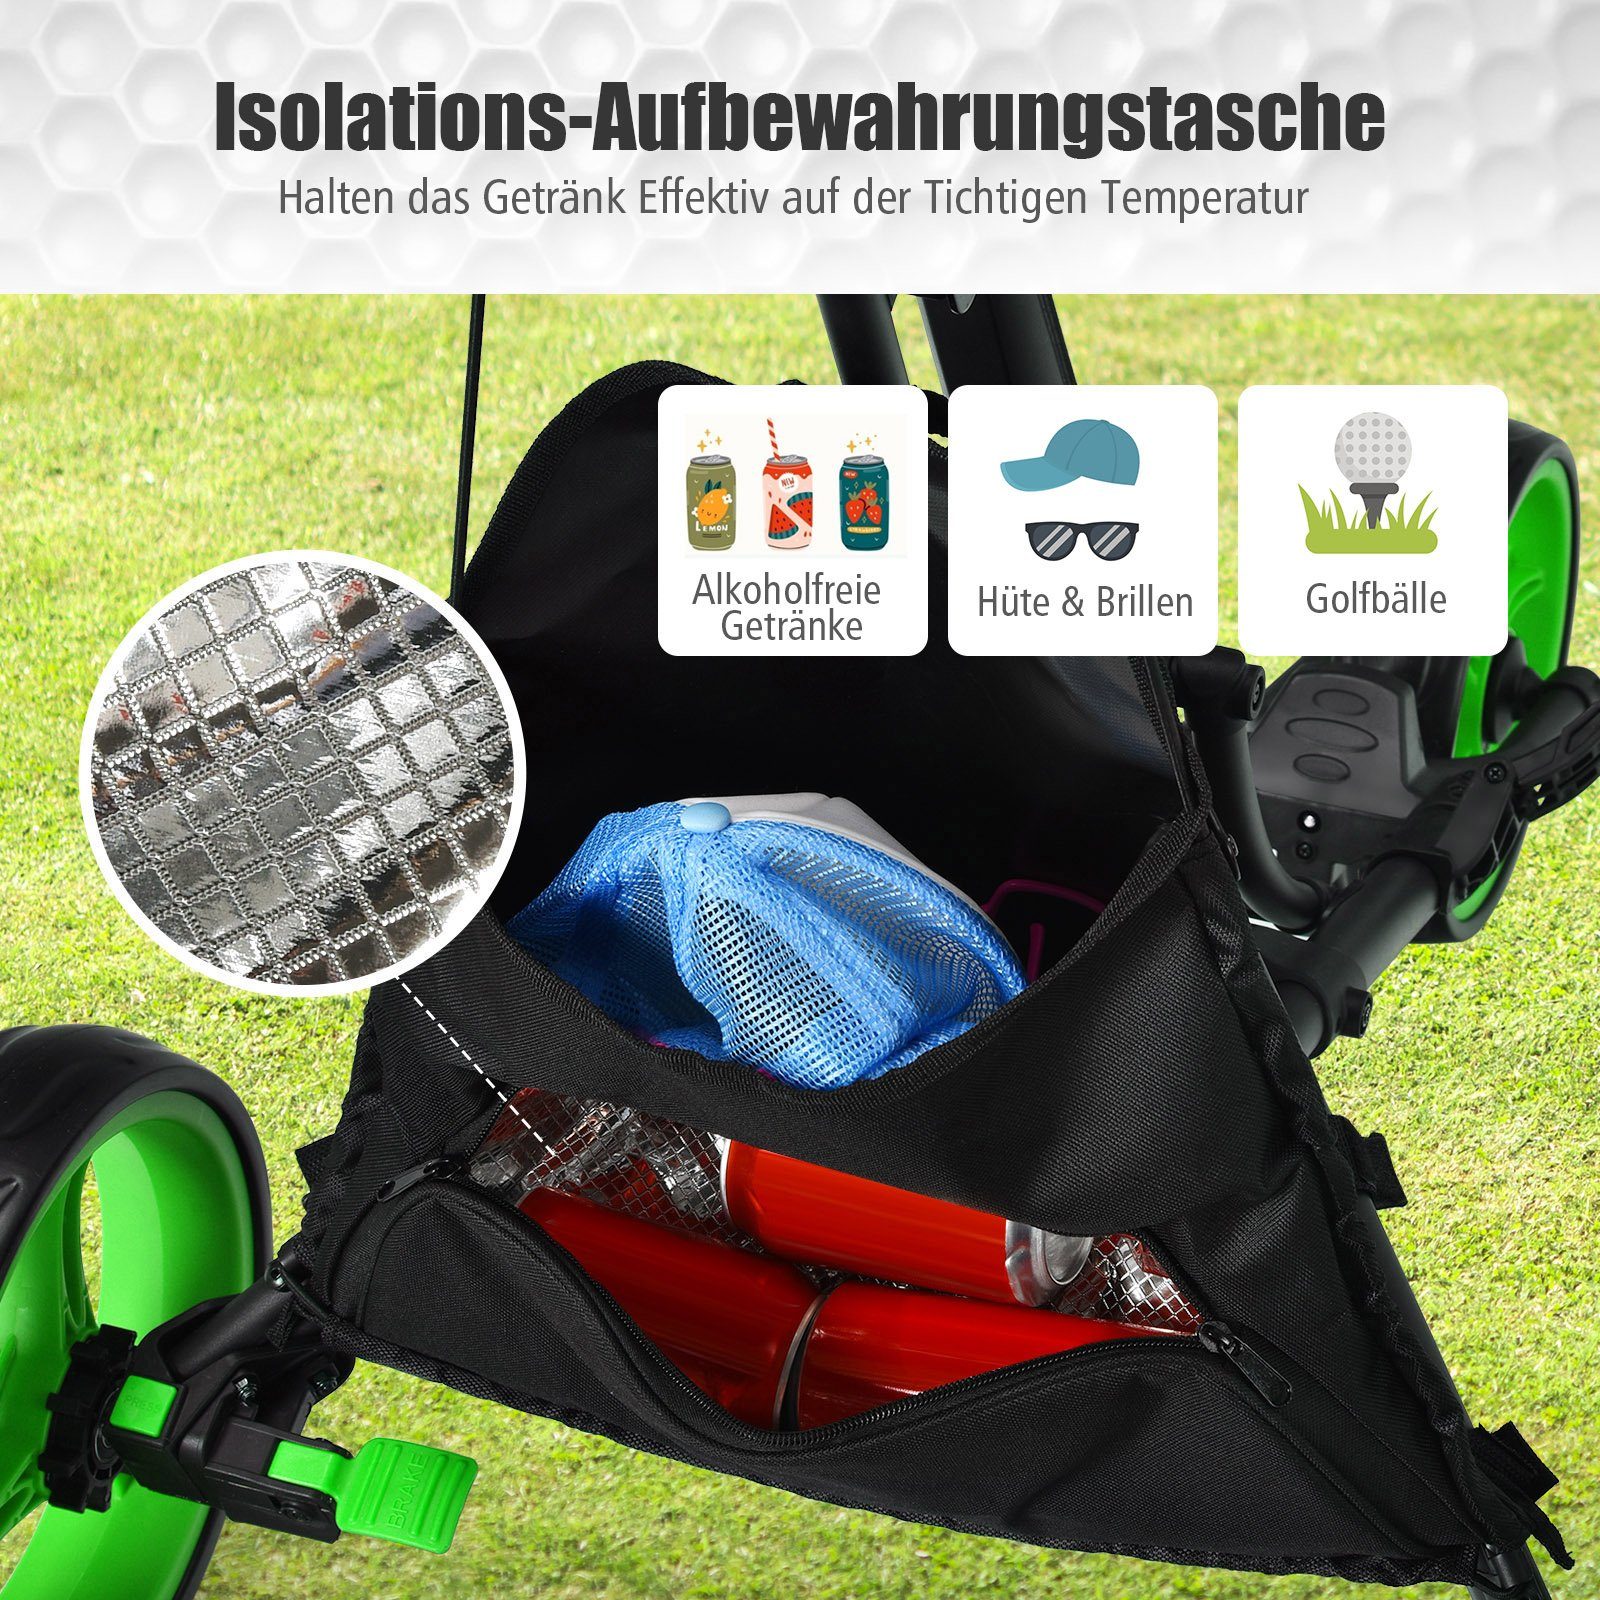 Golftrolley mit Griff, Tasche verstellbarem 3-Rad, grün COSTWAY